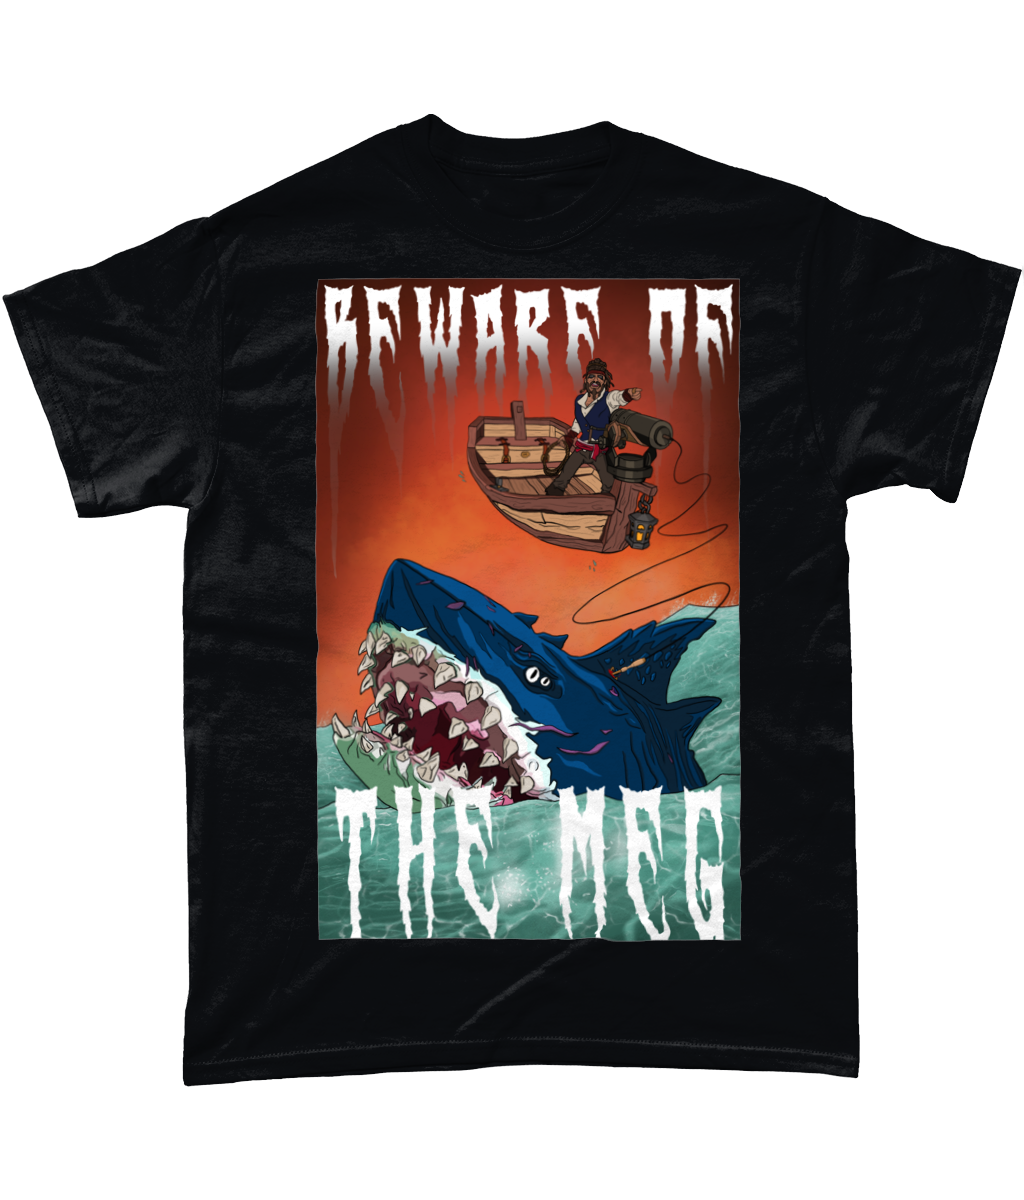 Rob Raven 'The Meg' T-Shirt